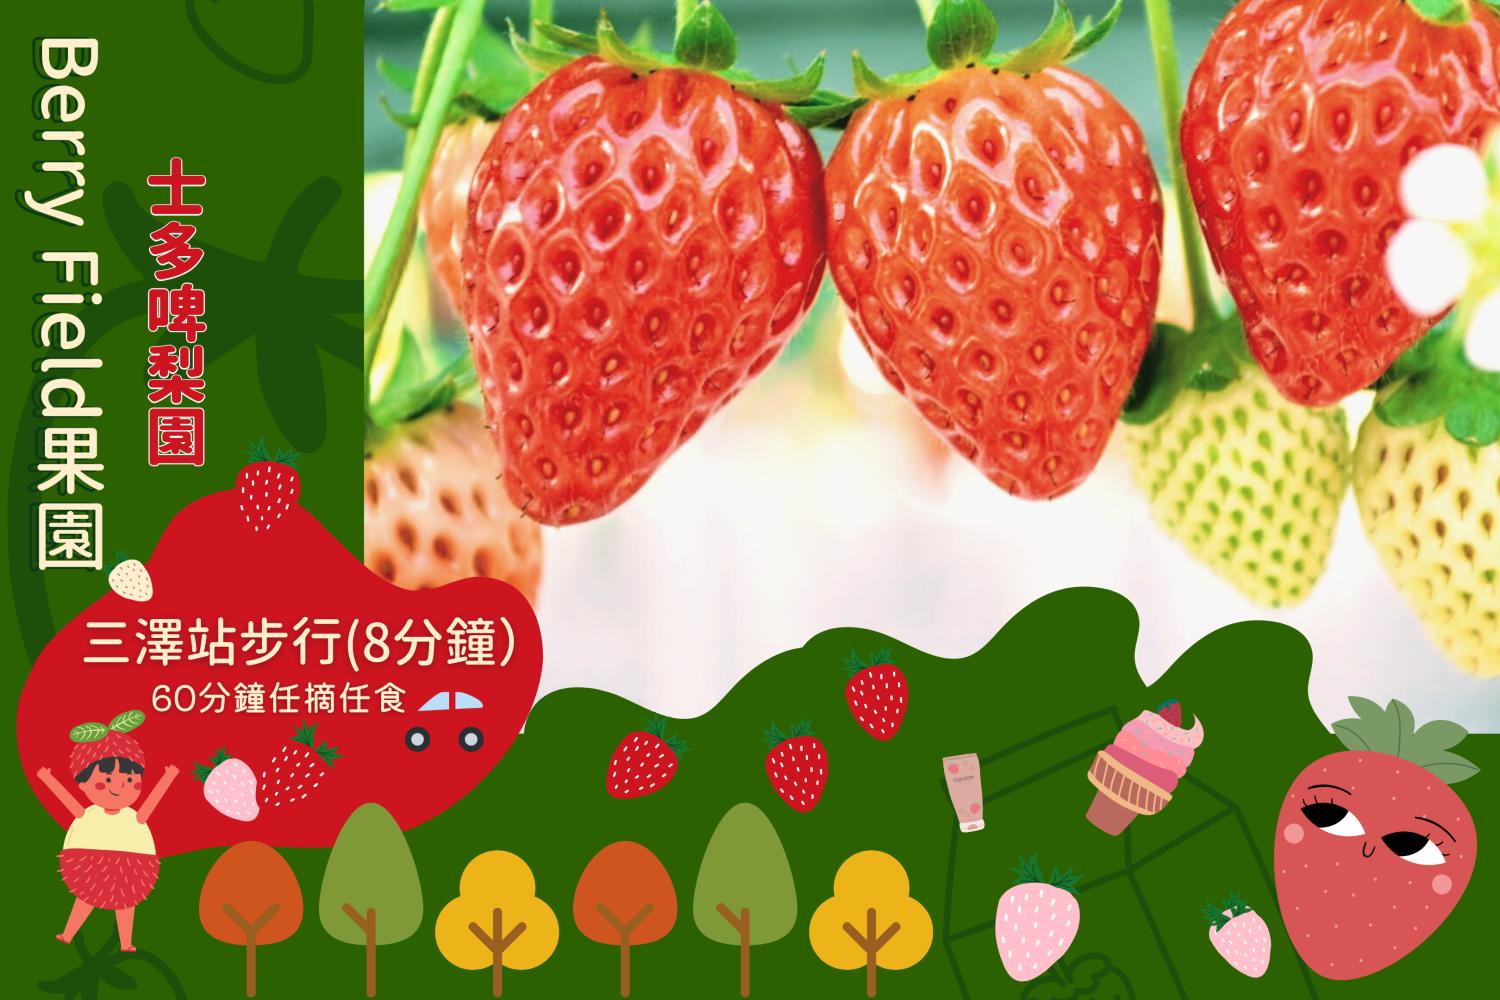 Young's Holidays 【田園草莓之味】福岡Berry Field草莓60分鐘任食體驗 1